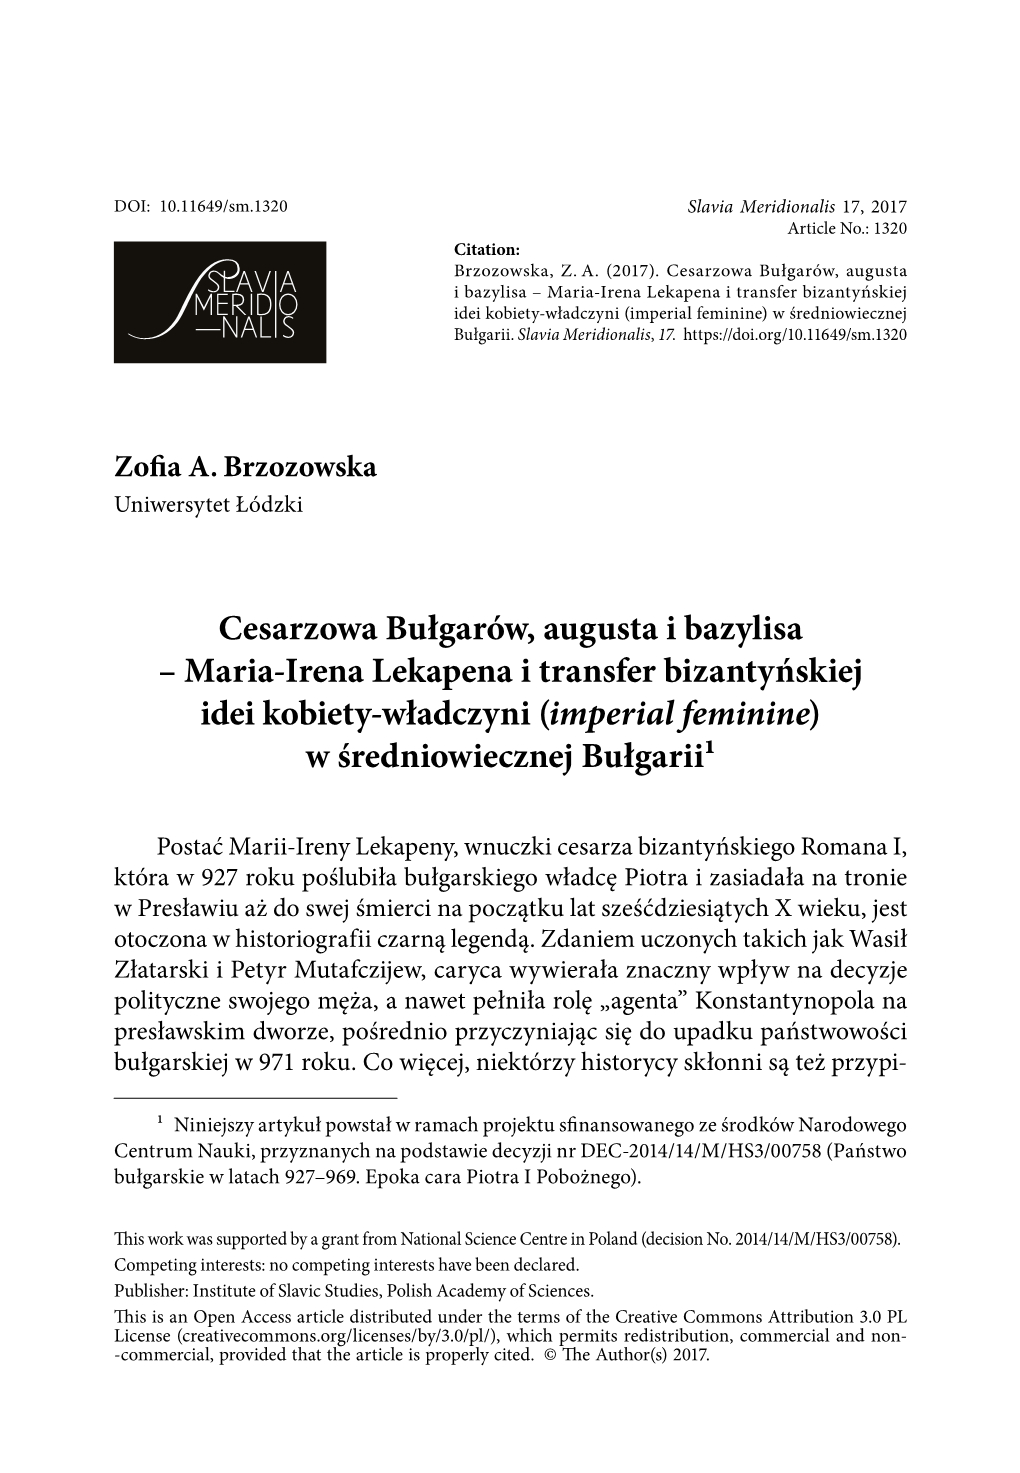 Maria-Irena Lekapena I Transfer Bizantyńskiej Idei Kobiety-Władczyni (Imperial Feminine) W Średniowiecznej Bułgarii